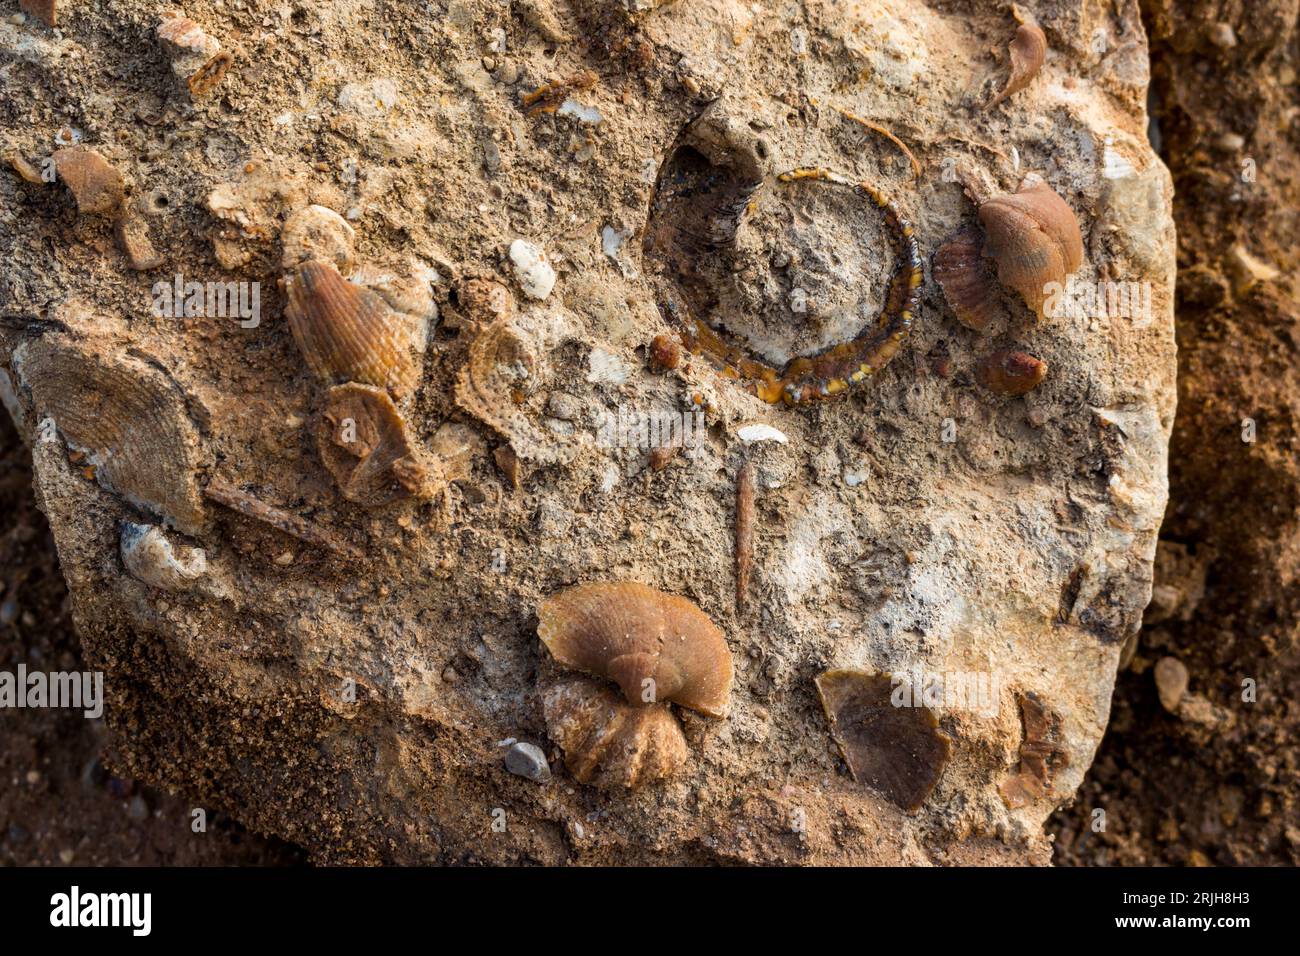 Fragmento de roca caliza con fósiles marinos silicificados. Período carbonífero, Rusia central Foto de stock